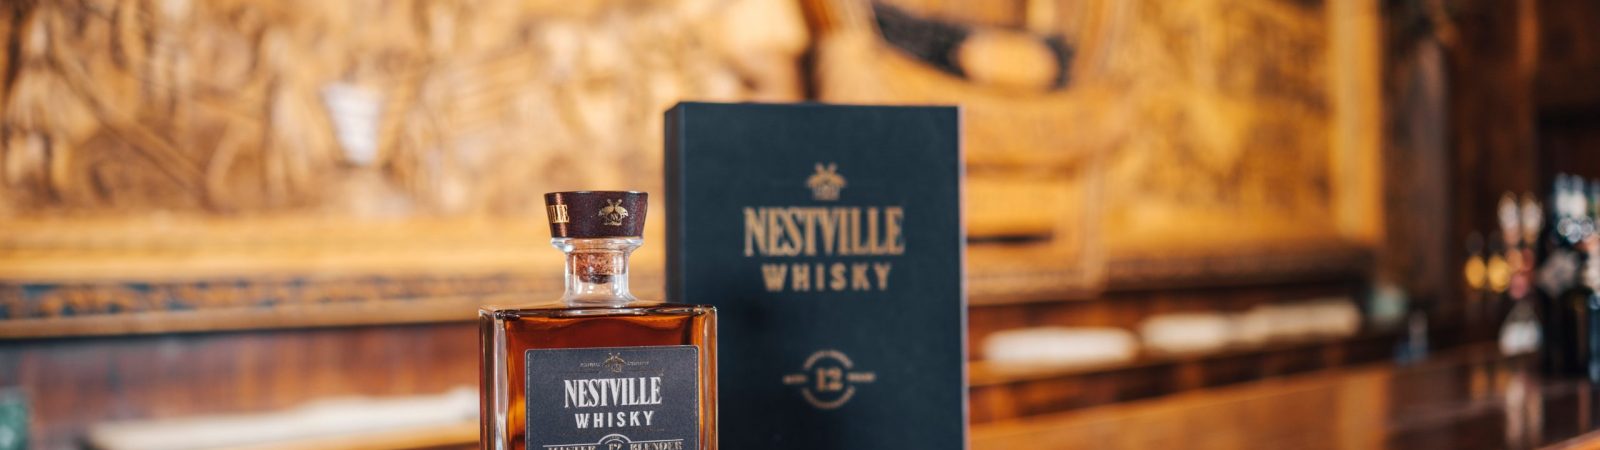 Nestville Whisky Master Blender 12yo